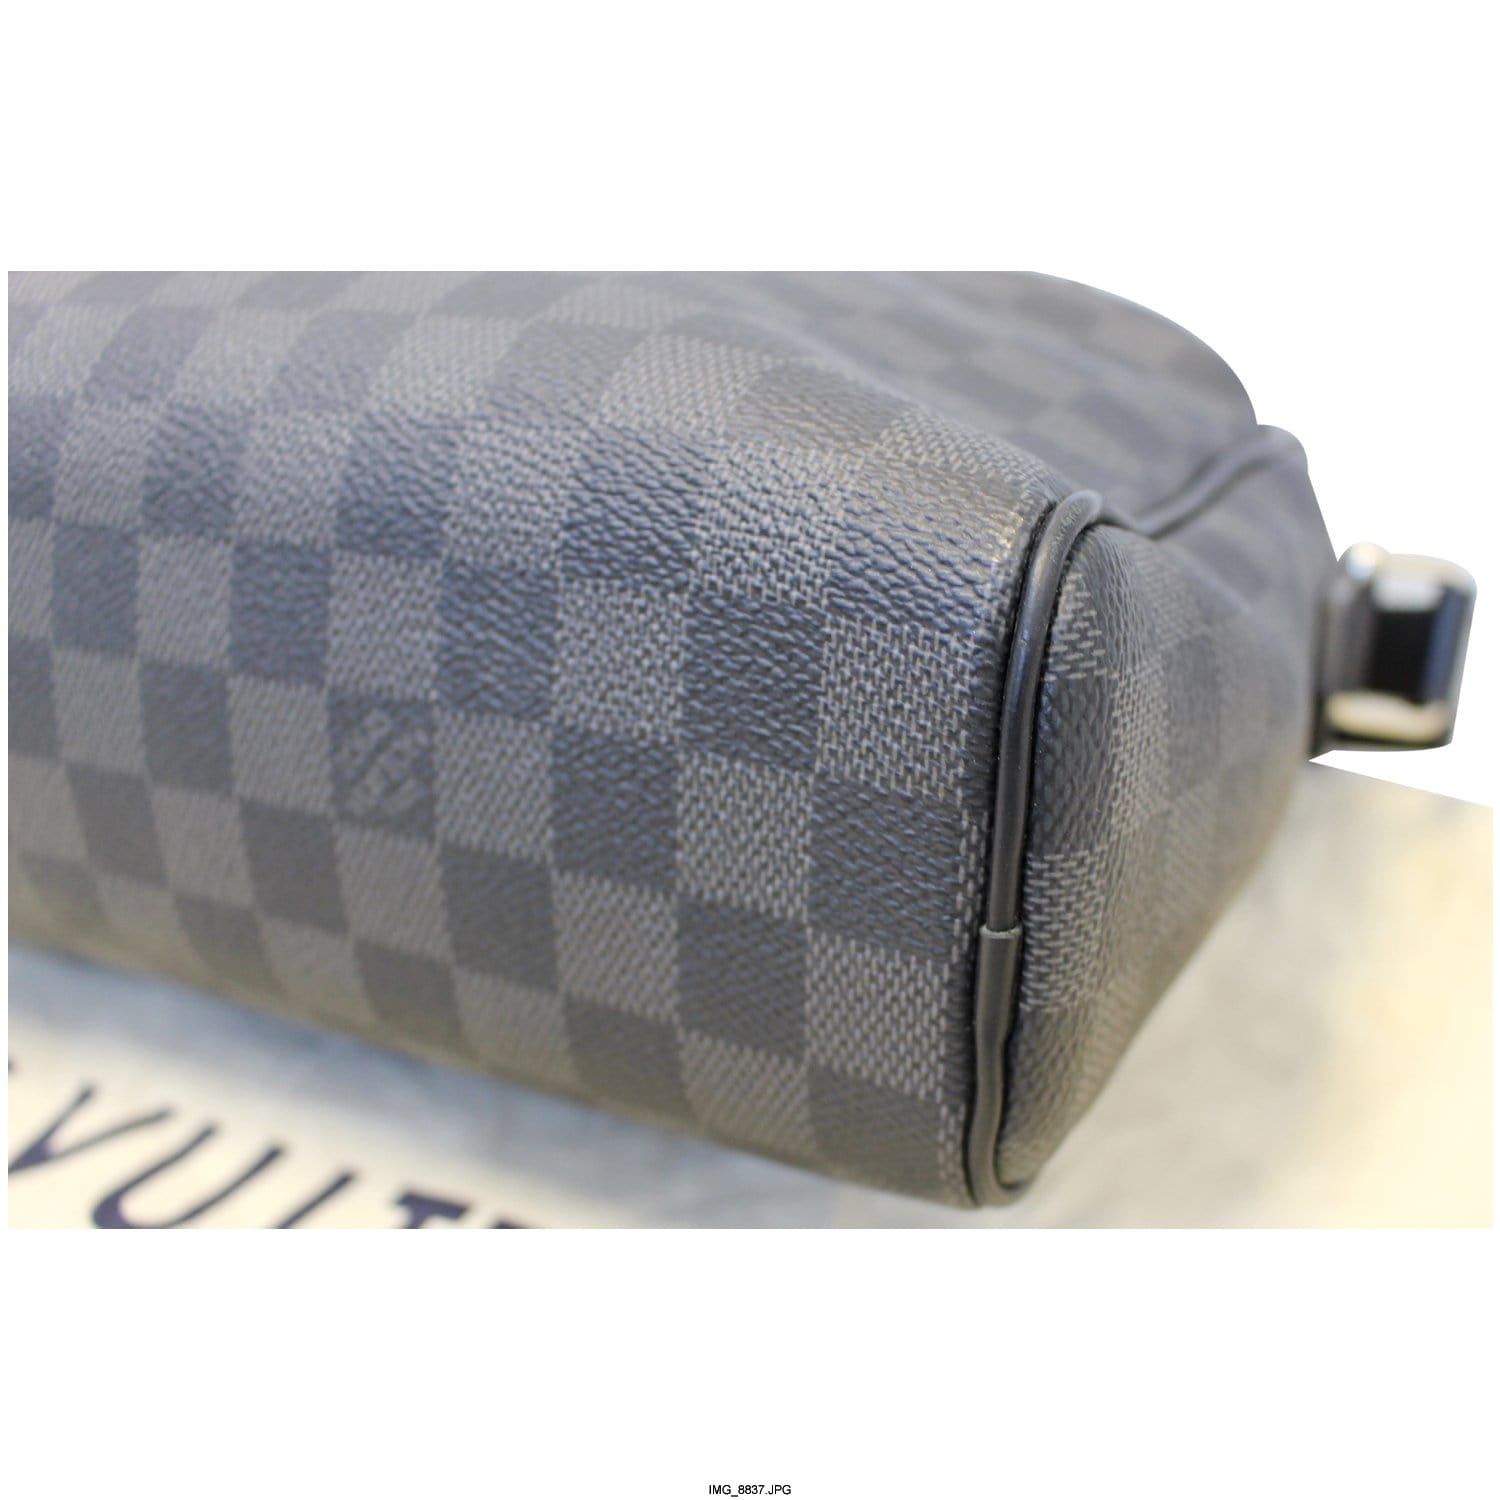 Louis Vuitton Reporter Dayton PM Damier Graphite Shoulder Bag, 1inatrillion